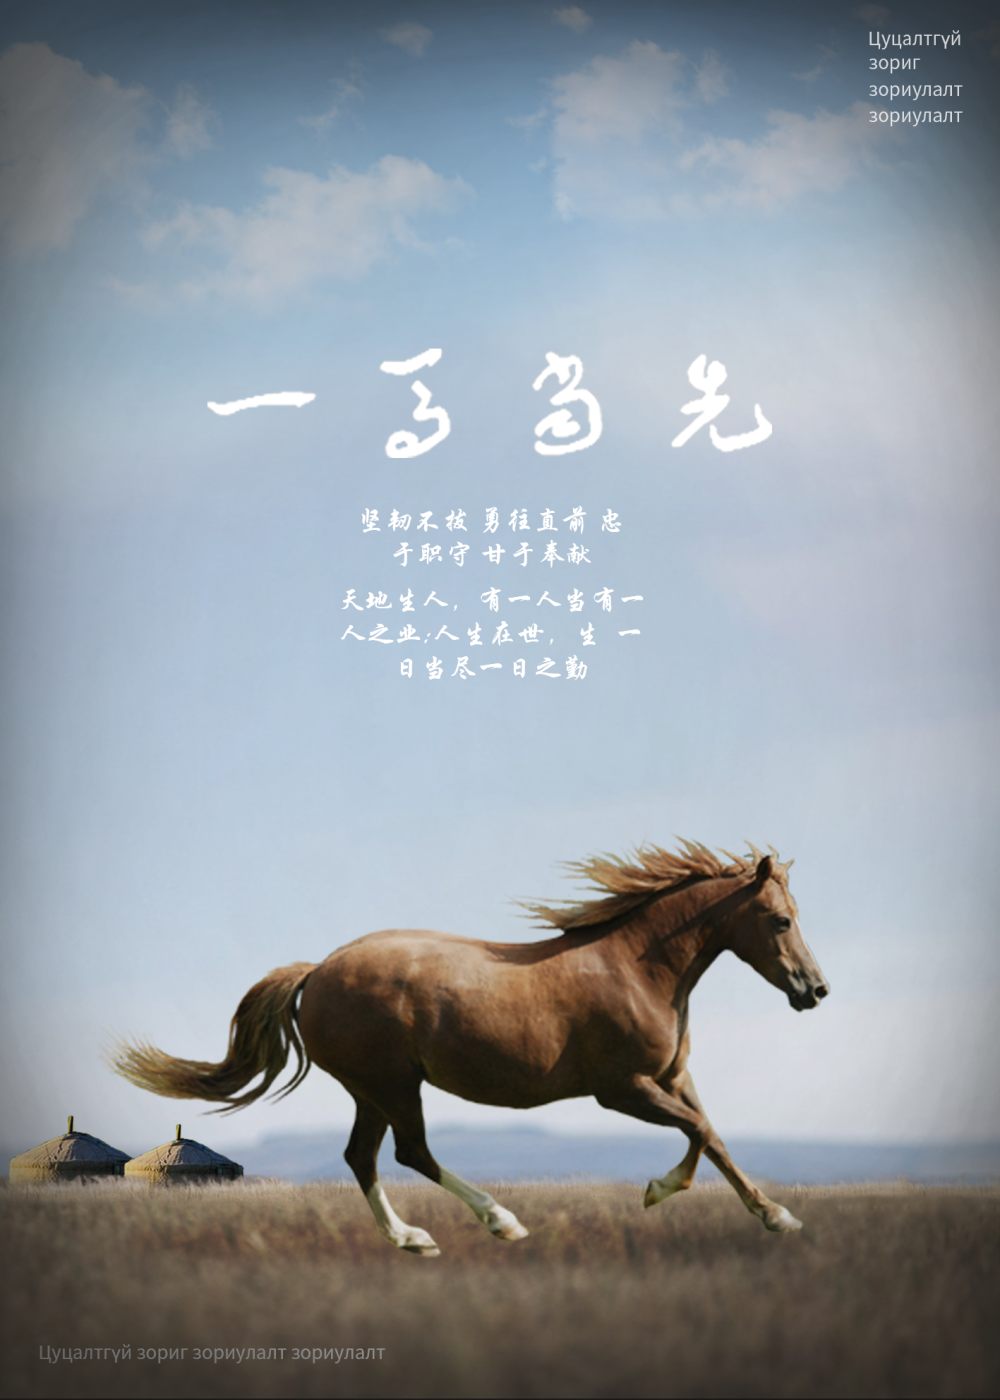 作者姓名:姚佳慧设计思路:结合这次海报主题,以马和草原为主,弘扬蒙古